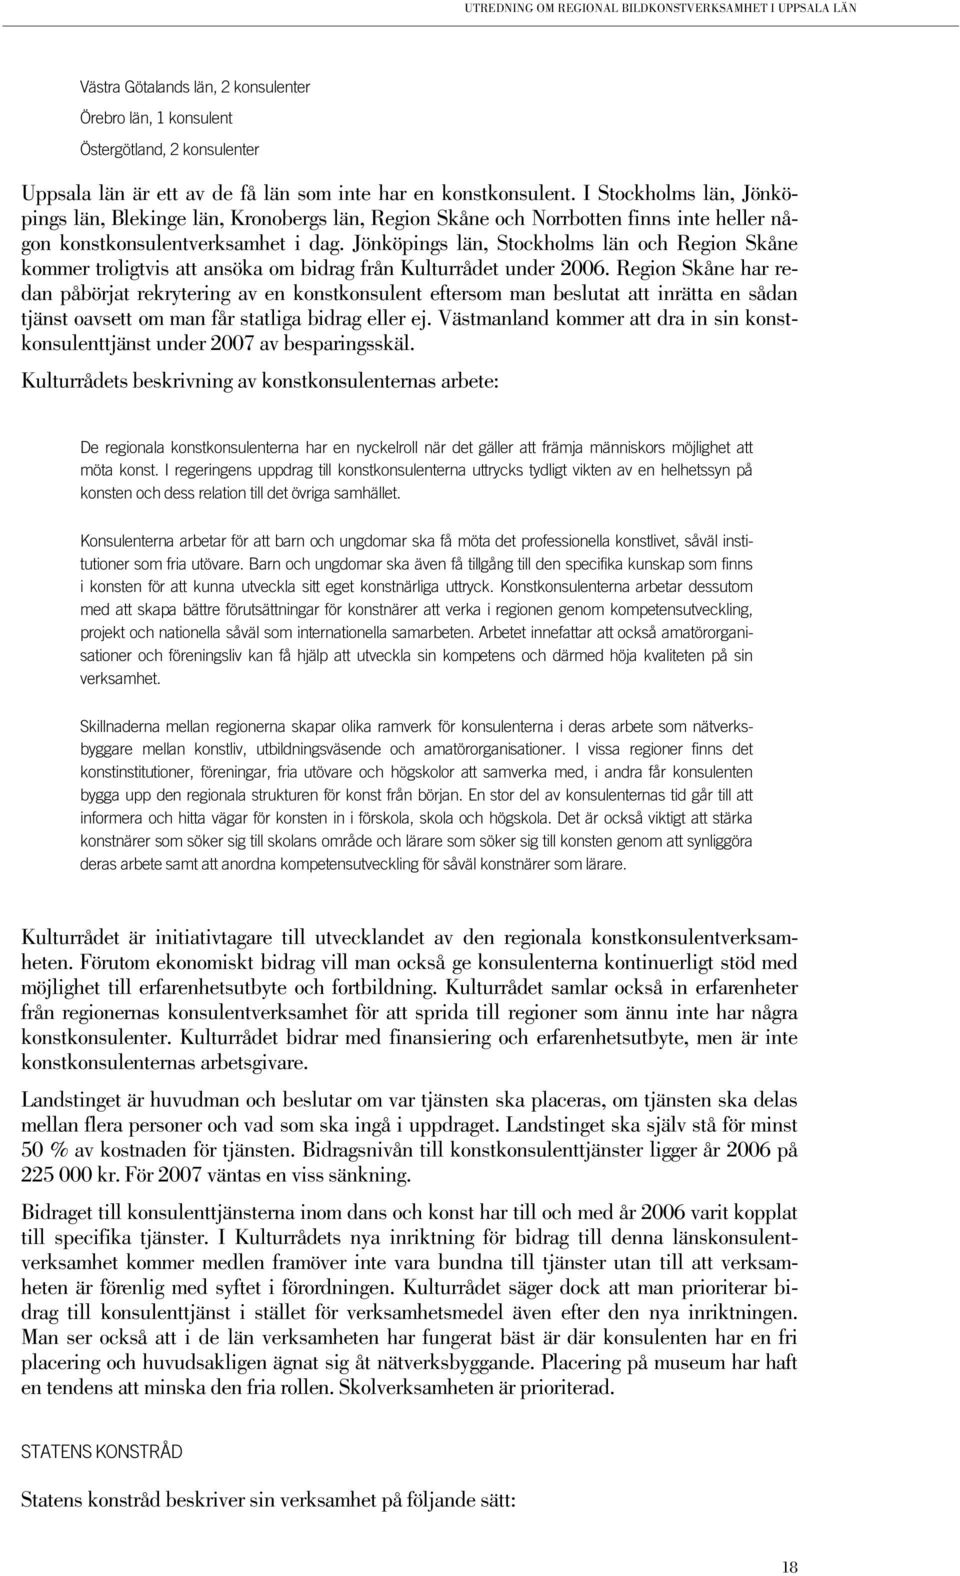 Jönköpings län, Stockholms län och Region Skåne kommer troligtvis att ansöka om bidrag från Kulturrådet under 2006.